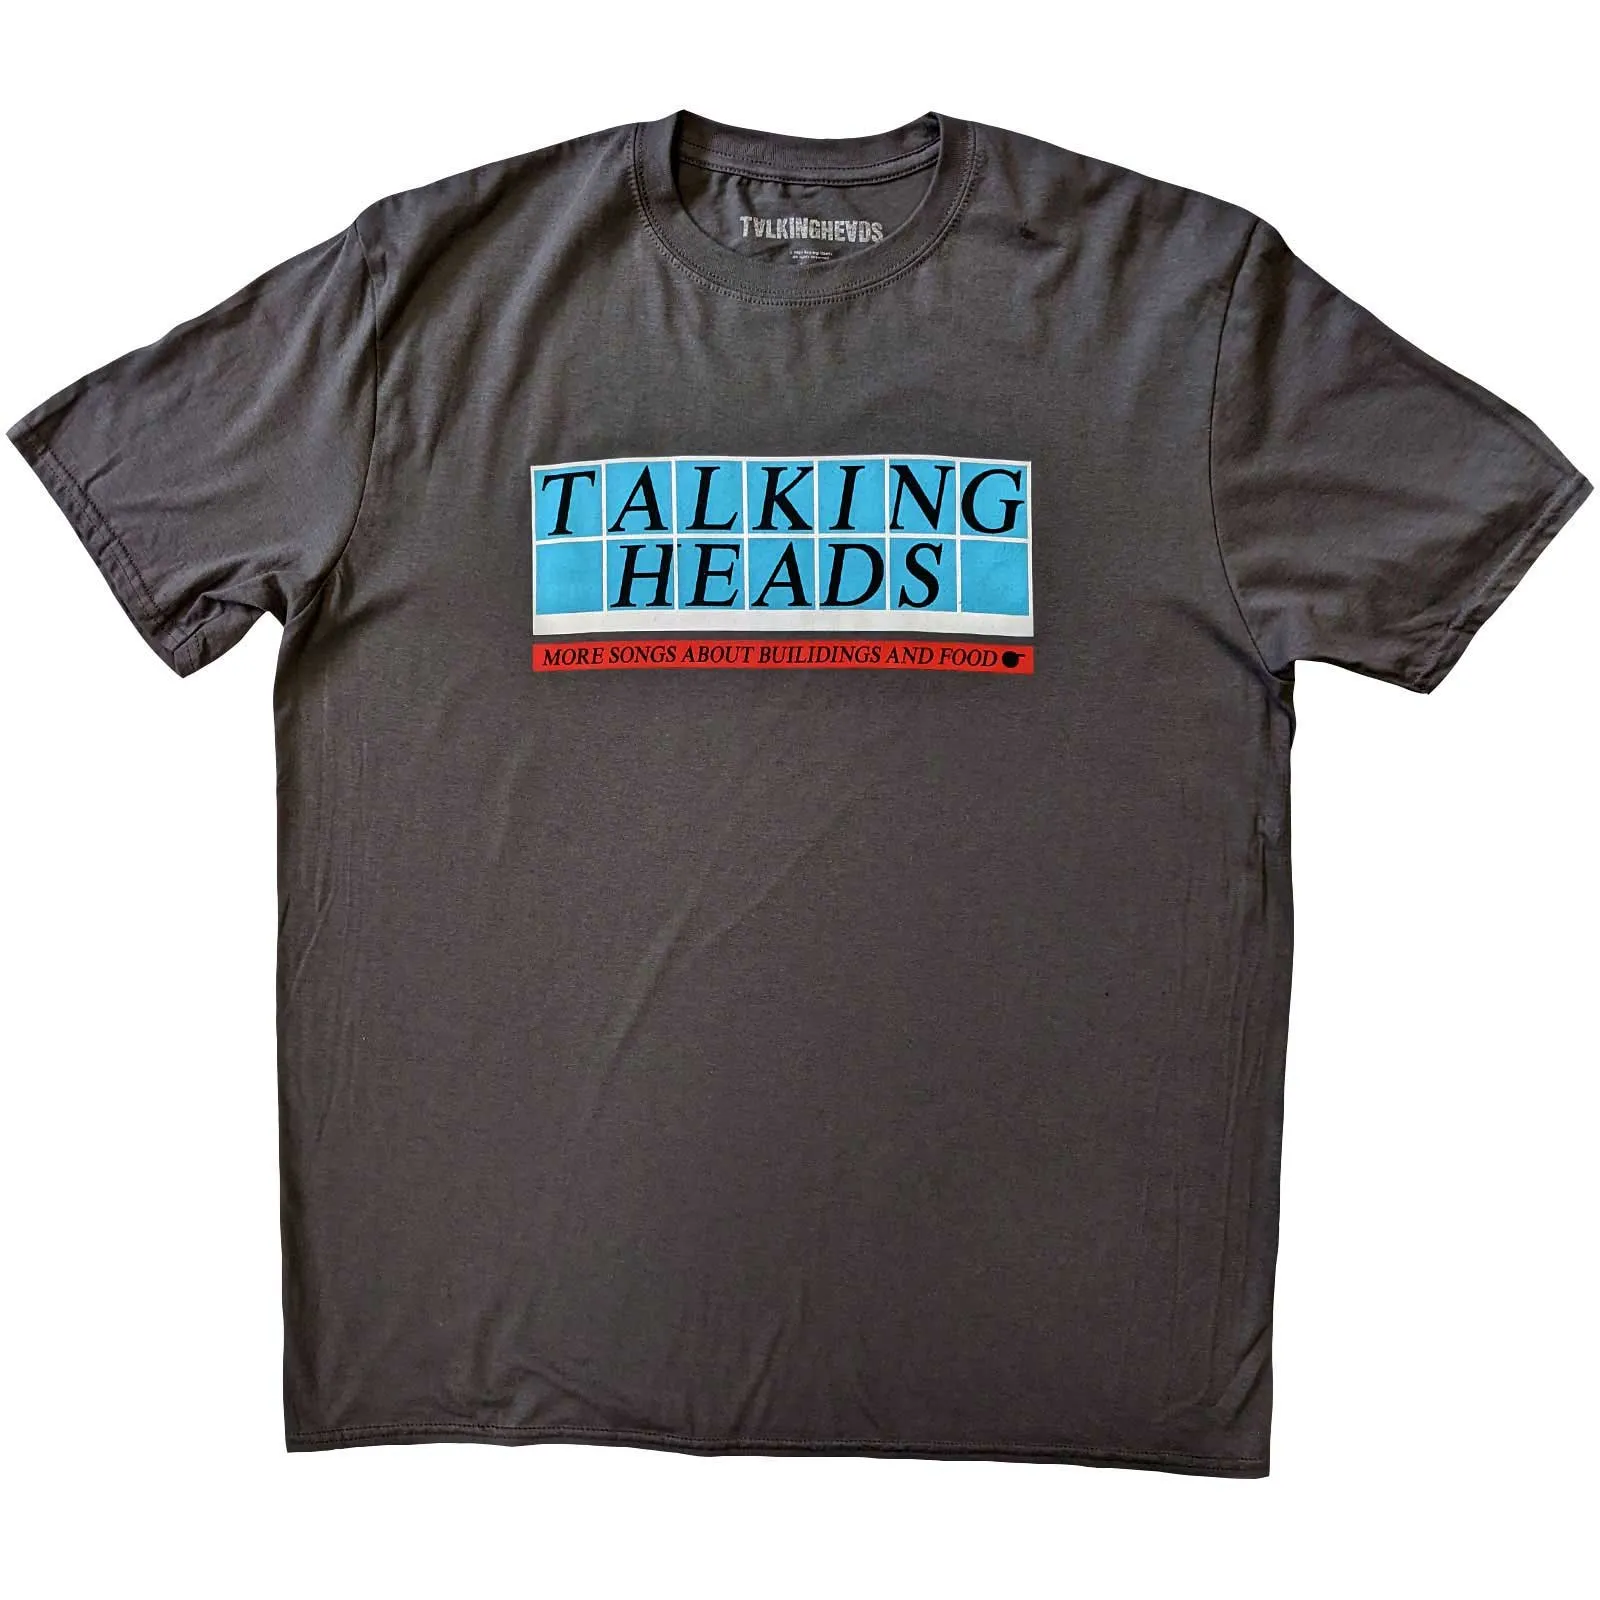 Talking Heads - Unisex T-Shirt Tiled Logo artwork